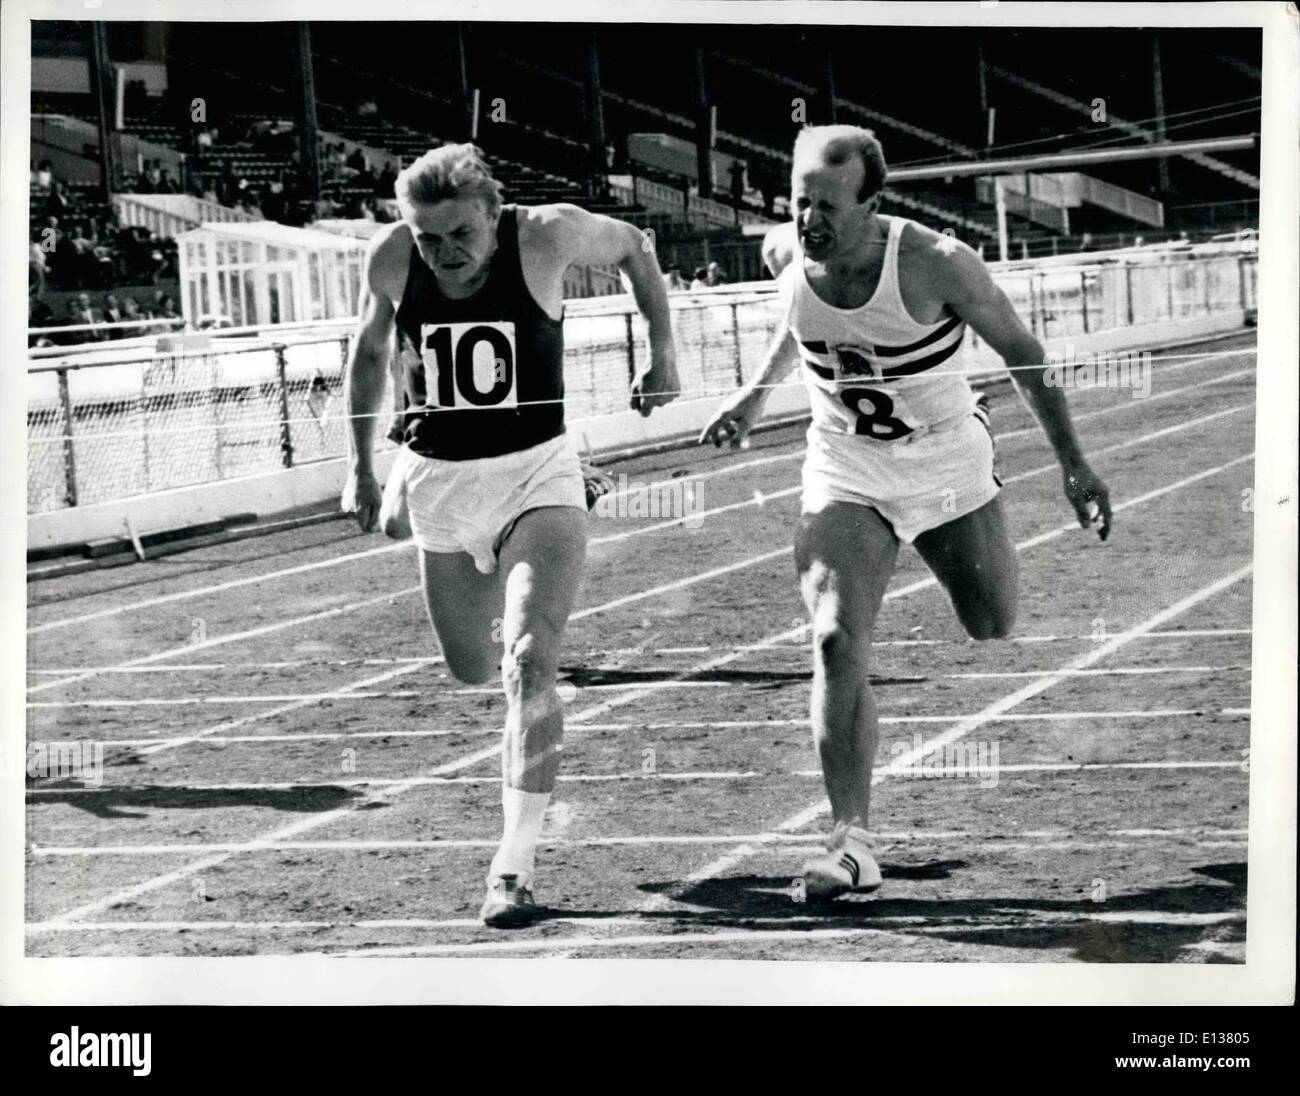 29. Februar 2012 - Einladung 200 m: E. Romanowski Polens, links, gewinnt die Männer Einladung 200 Meter von David Jones, rechts, an der weißen Stadt, London Samstag, 2. Juli, mit einer Zeit von 21,3 Sekunden. Stockfoto